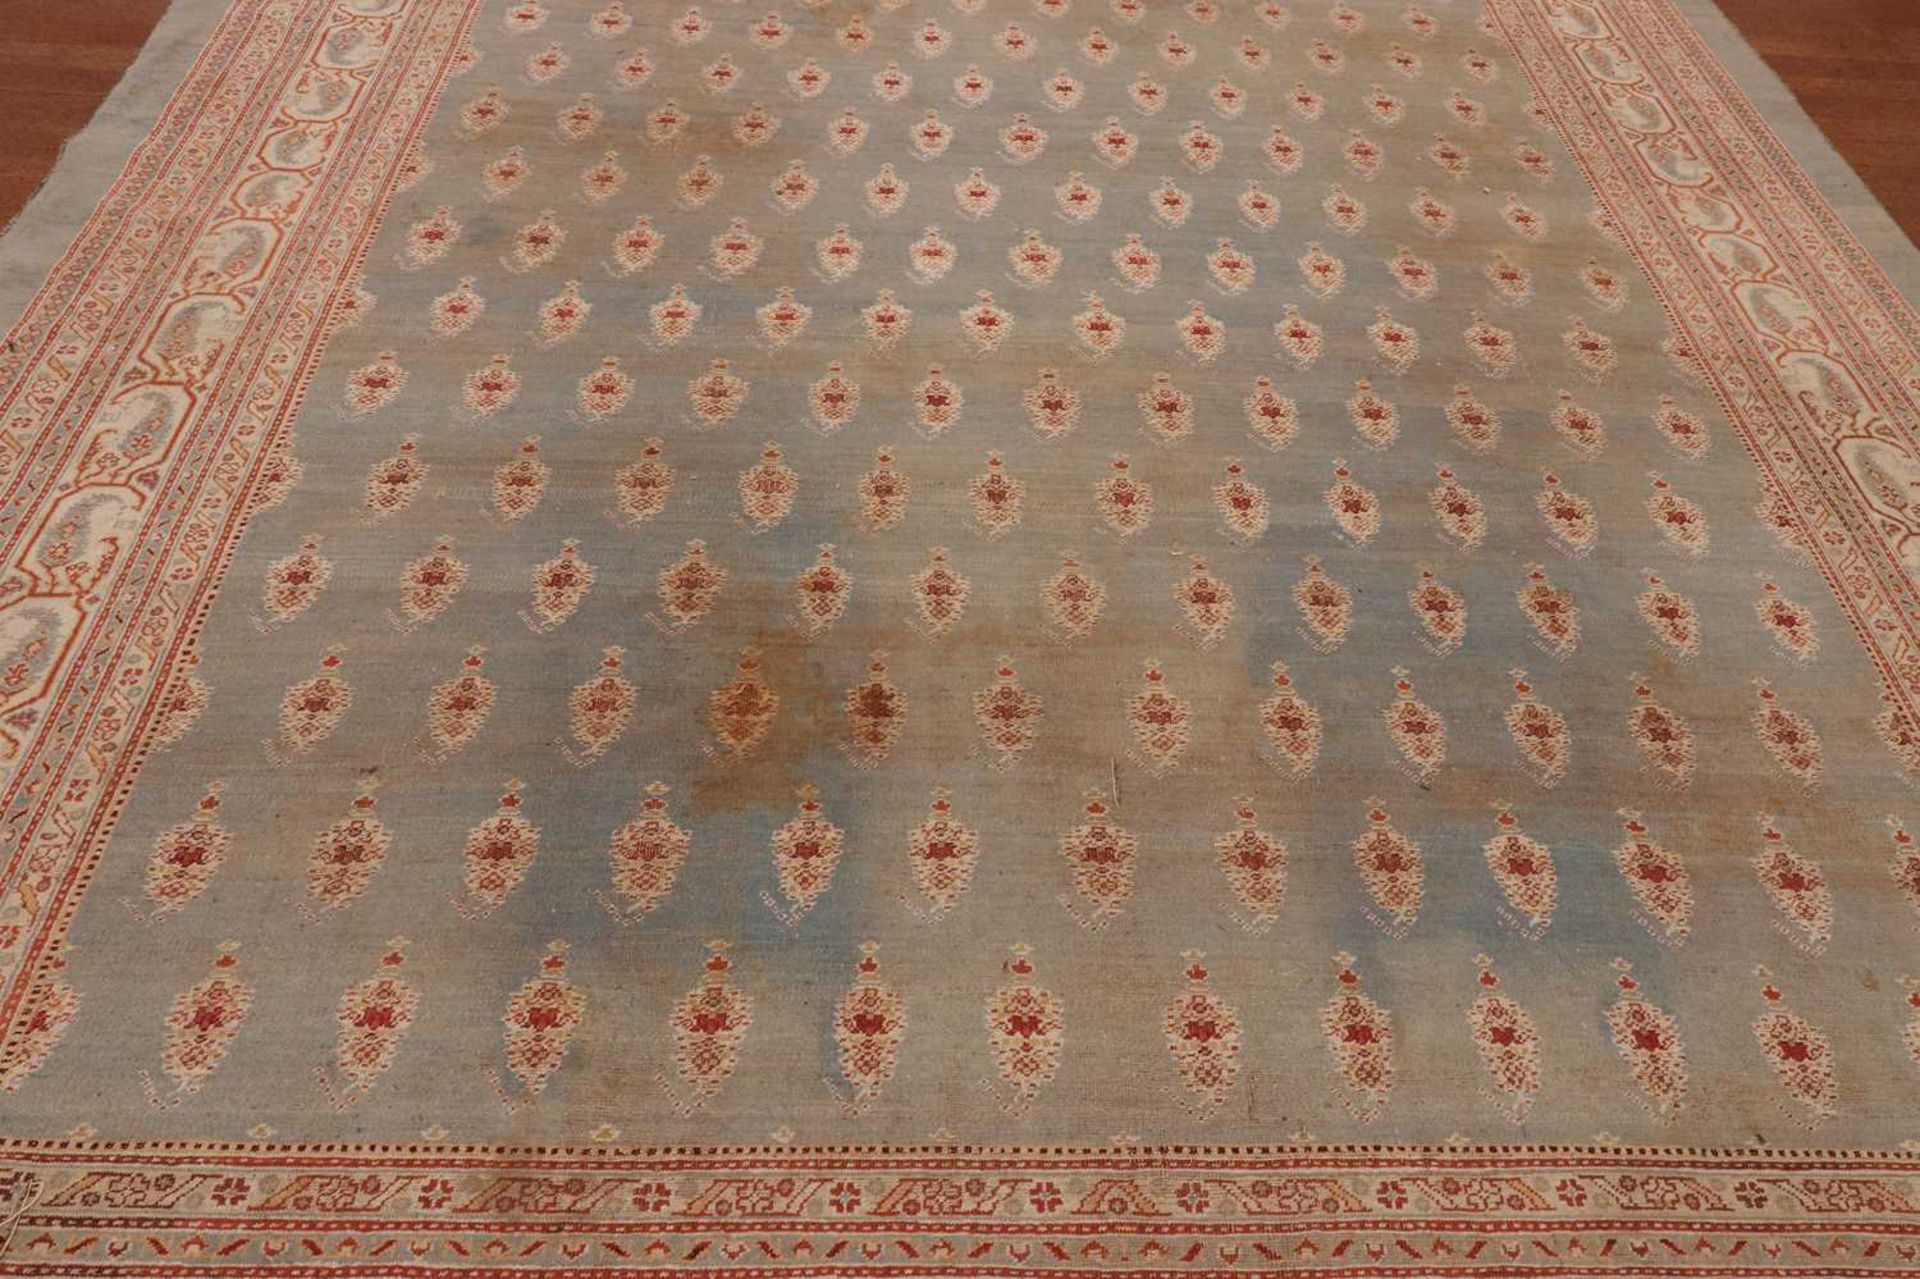 ☘ A large blue Amritsar carpet, - Image 14 of 38